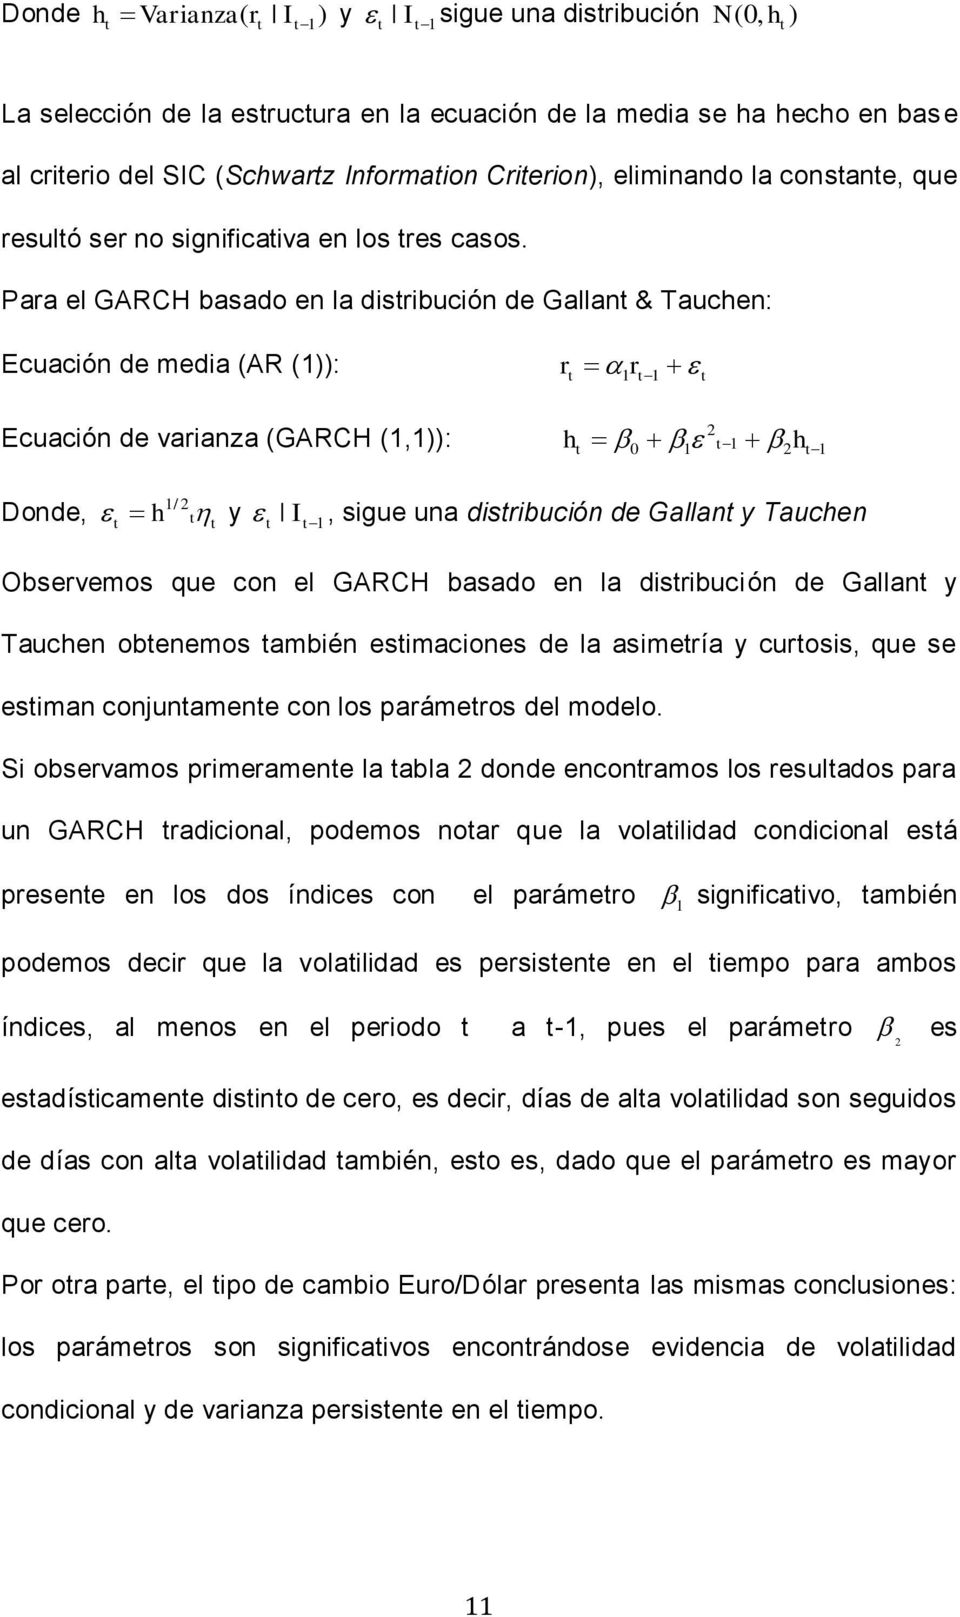 Para el basado en la disribución de Gallan & Tauchen: Ecuación de media (AR (1)): r 1 r 1 Ecuación de varianza ( (1,1)): h 0 1 1 h 1 Donde, h 1/ y I 1, sigue una disribución de Gallan y Tauchen